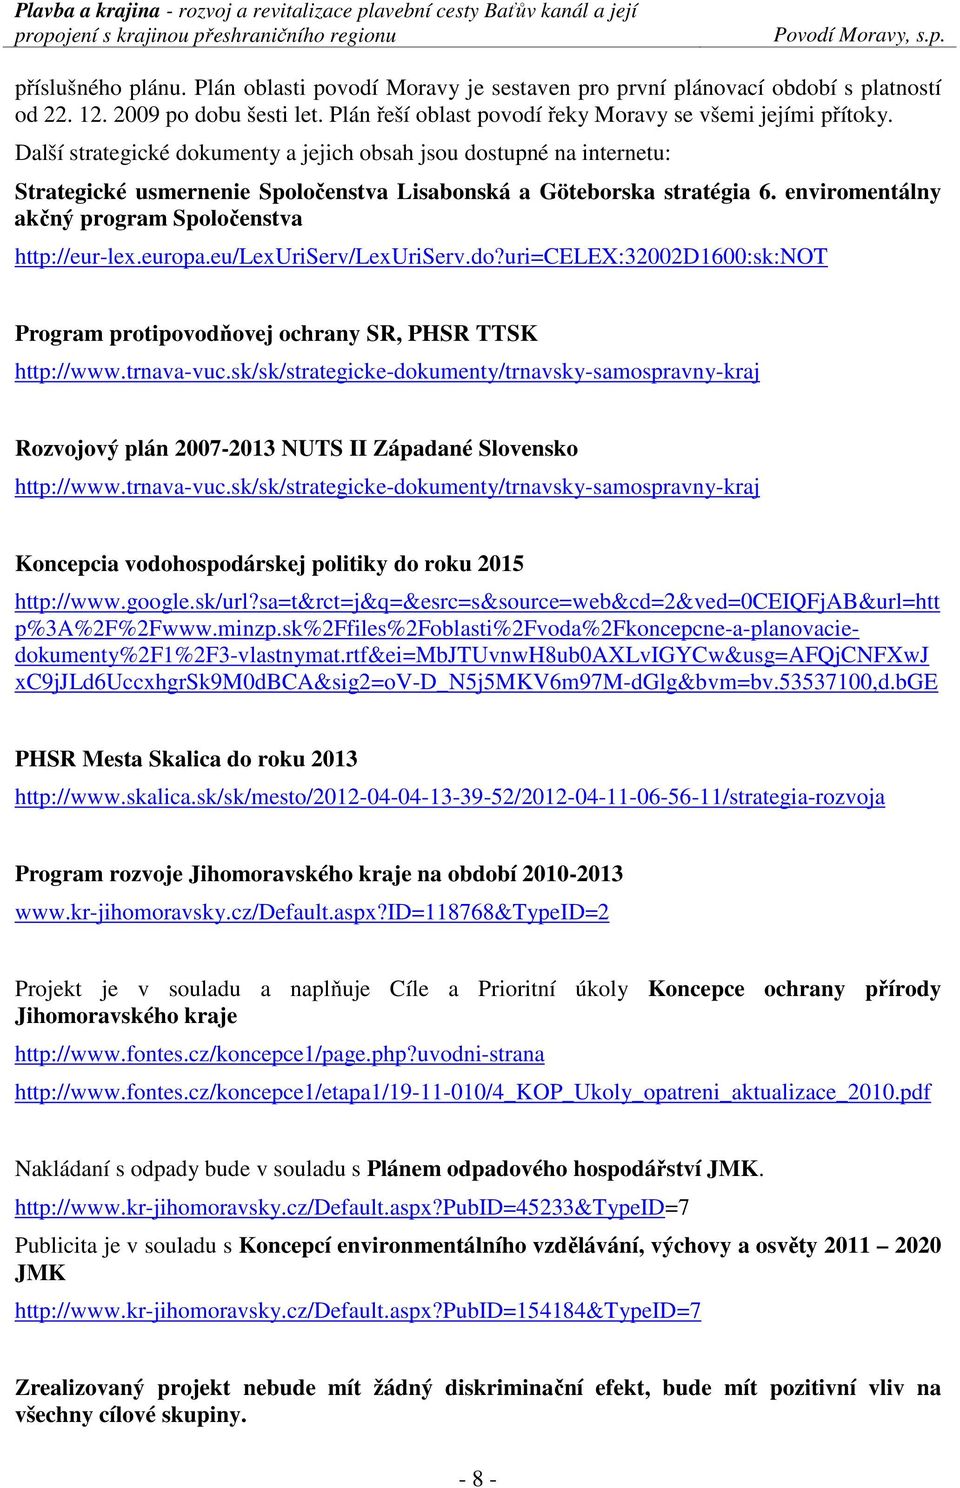 enviromentálny akčný program Spoločenstva http://eur-lex.europa.eu/lexuriserv/lexuriserv.do?uri=celex:32002d1600:sk:not Program protipovodňovej ochrany SR, PHSR TTSK http://www.trnava-vuc.